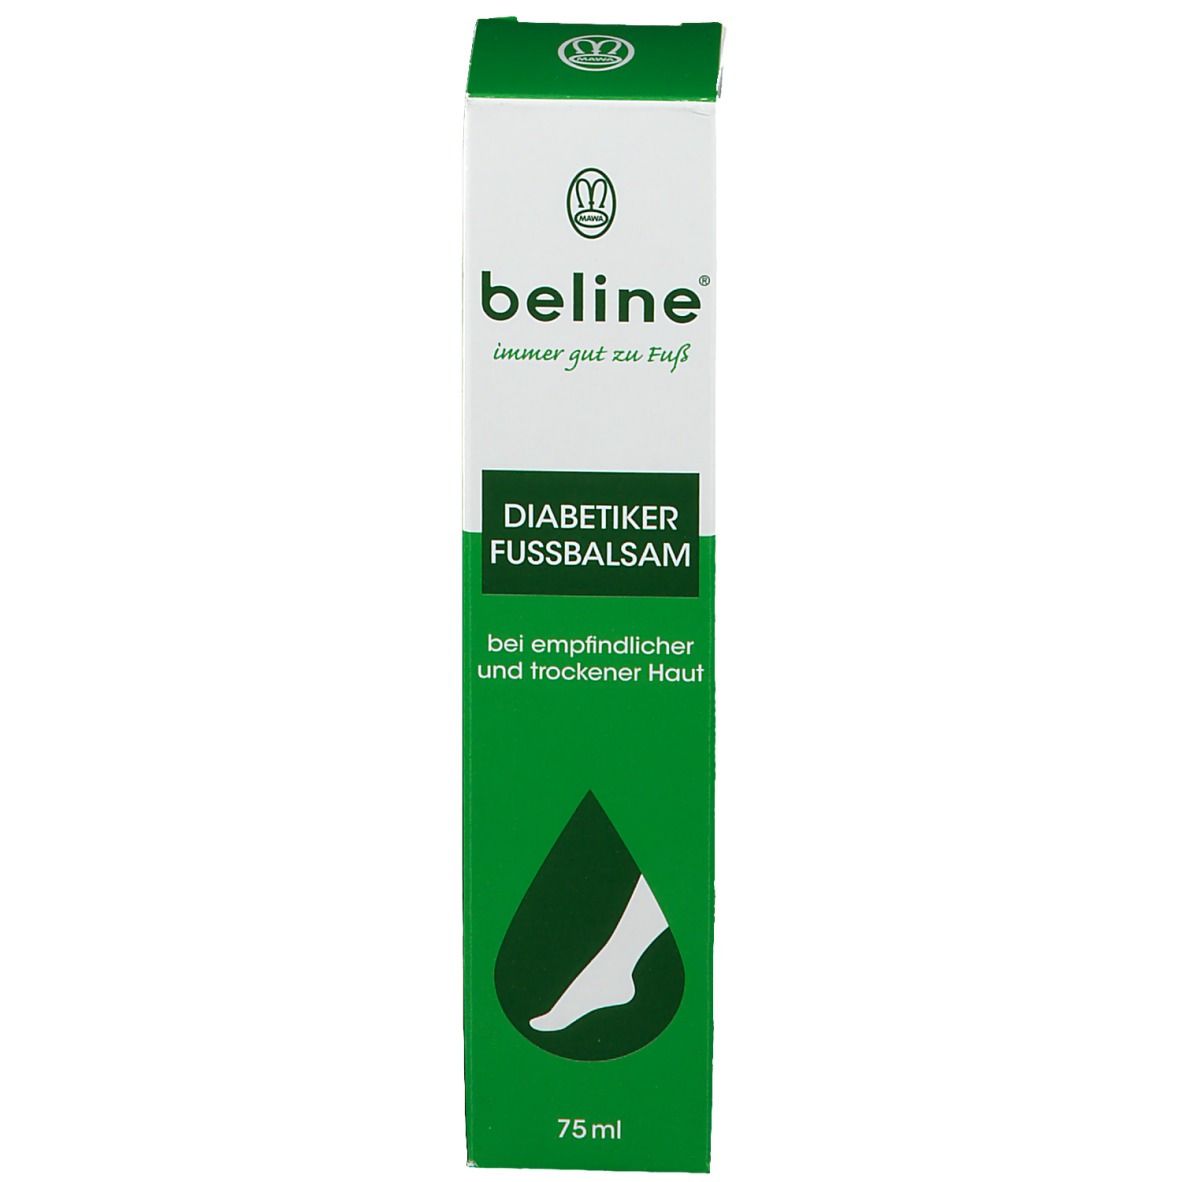 beline® med. Diabetiker Fußbalsam